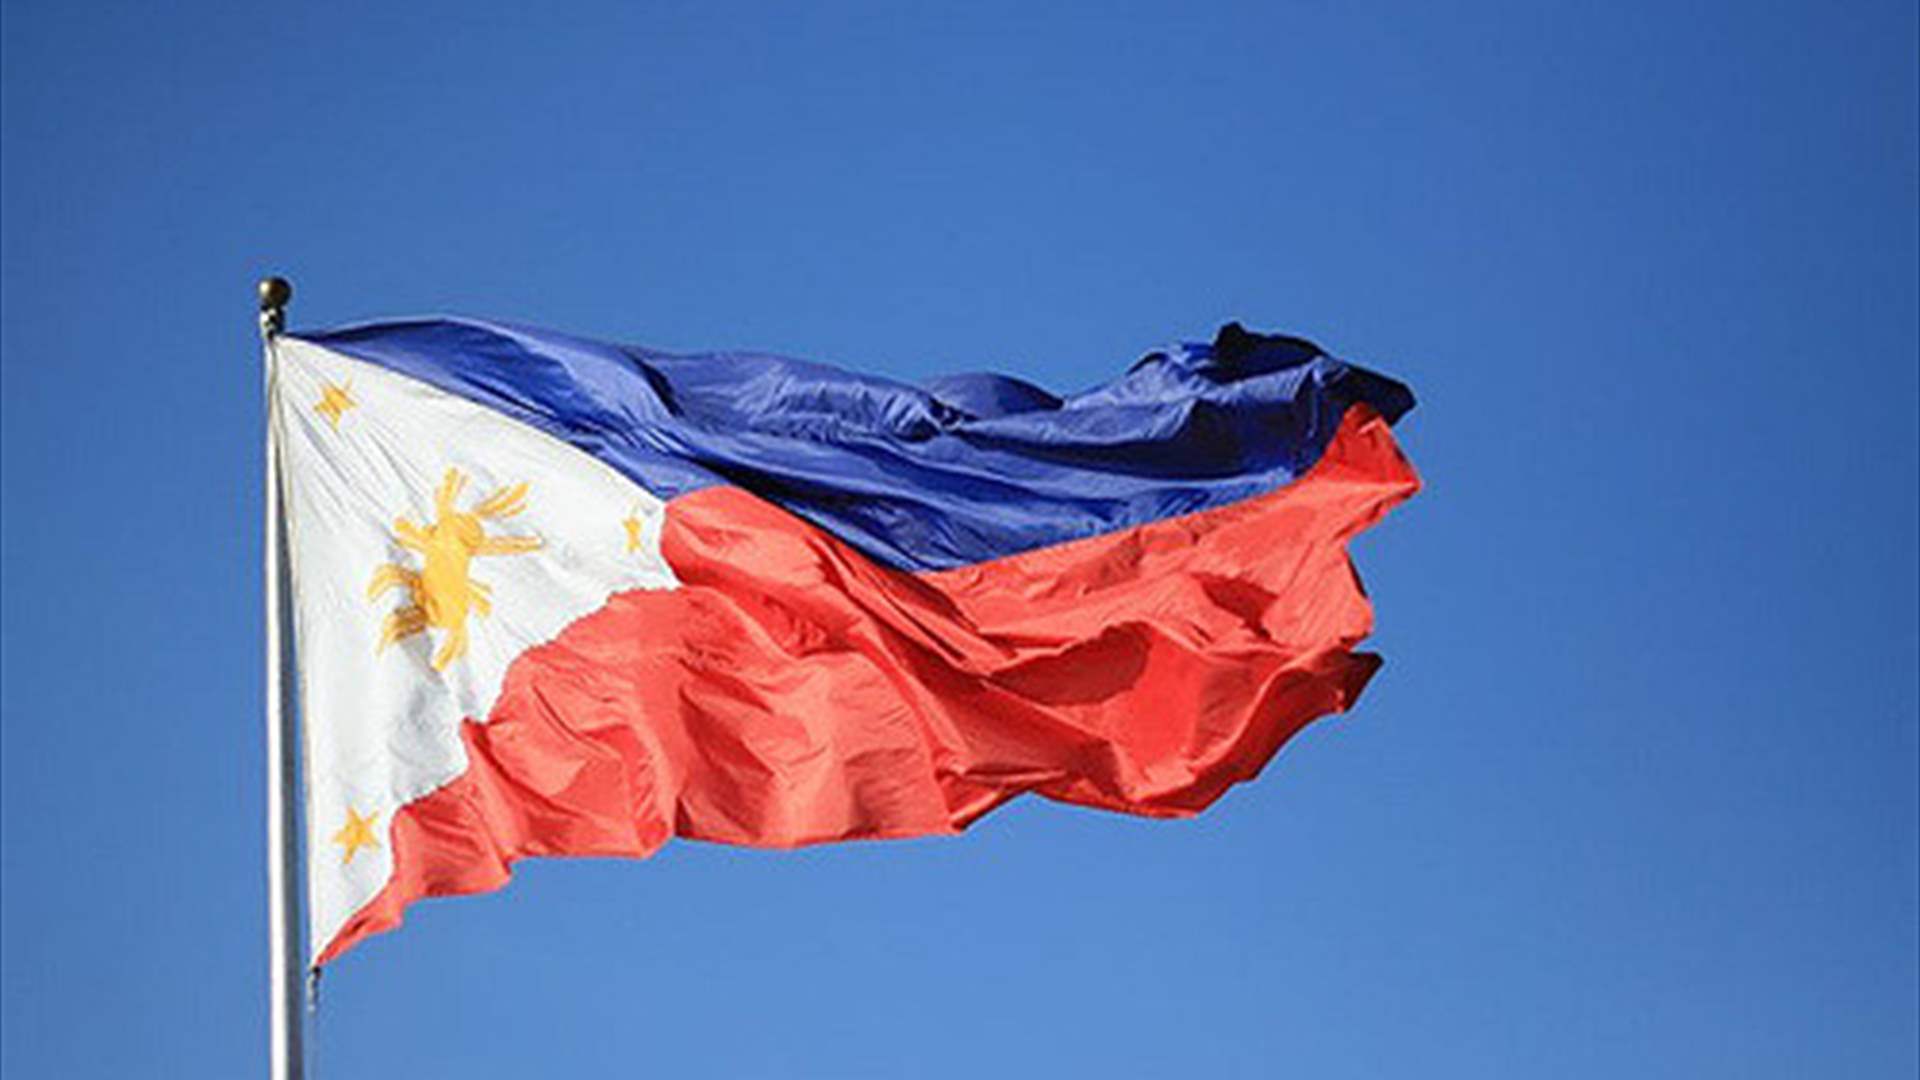 مانيلا تعلن أن الولايات المتحدة ستسحب نظام الصواريخ متوسّط المدى من الفيليبين